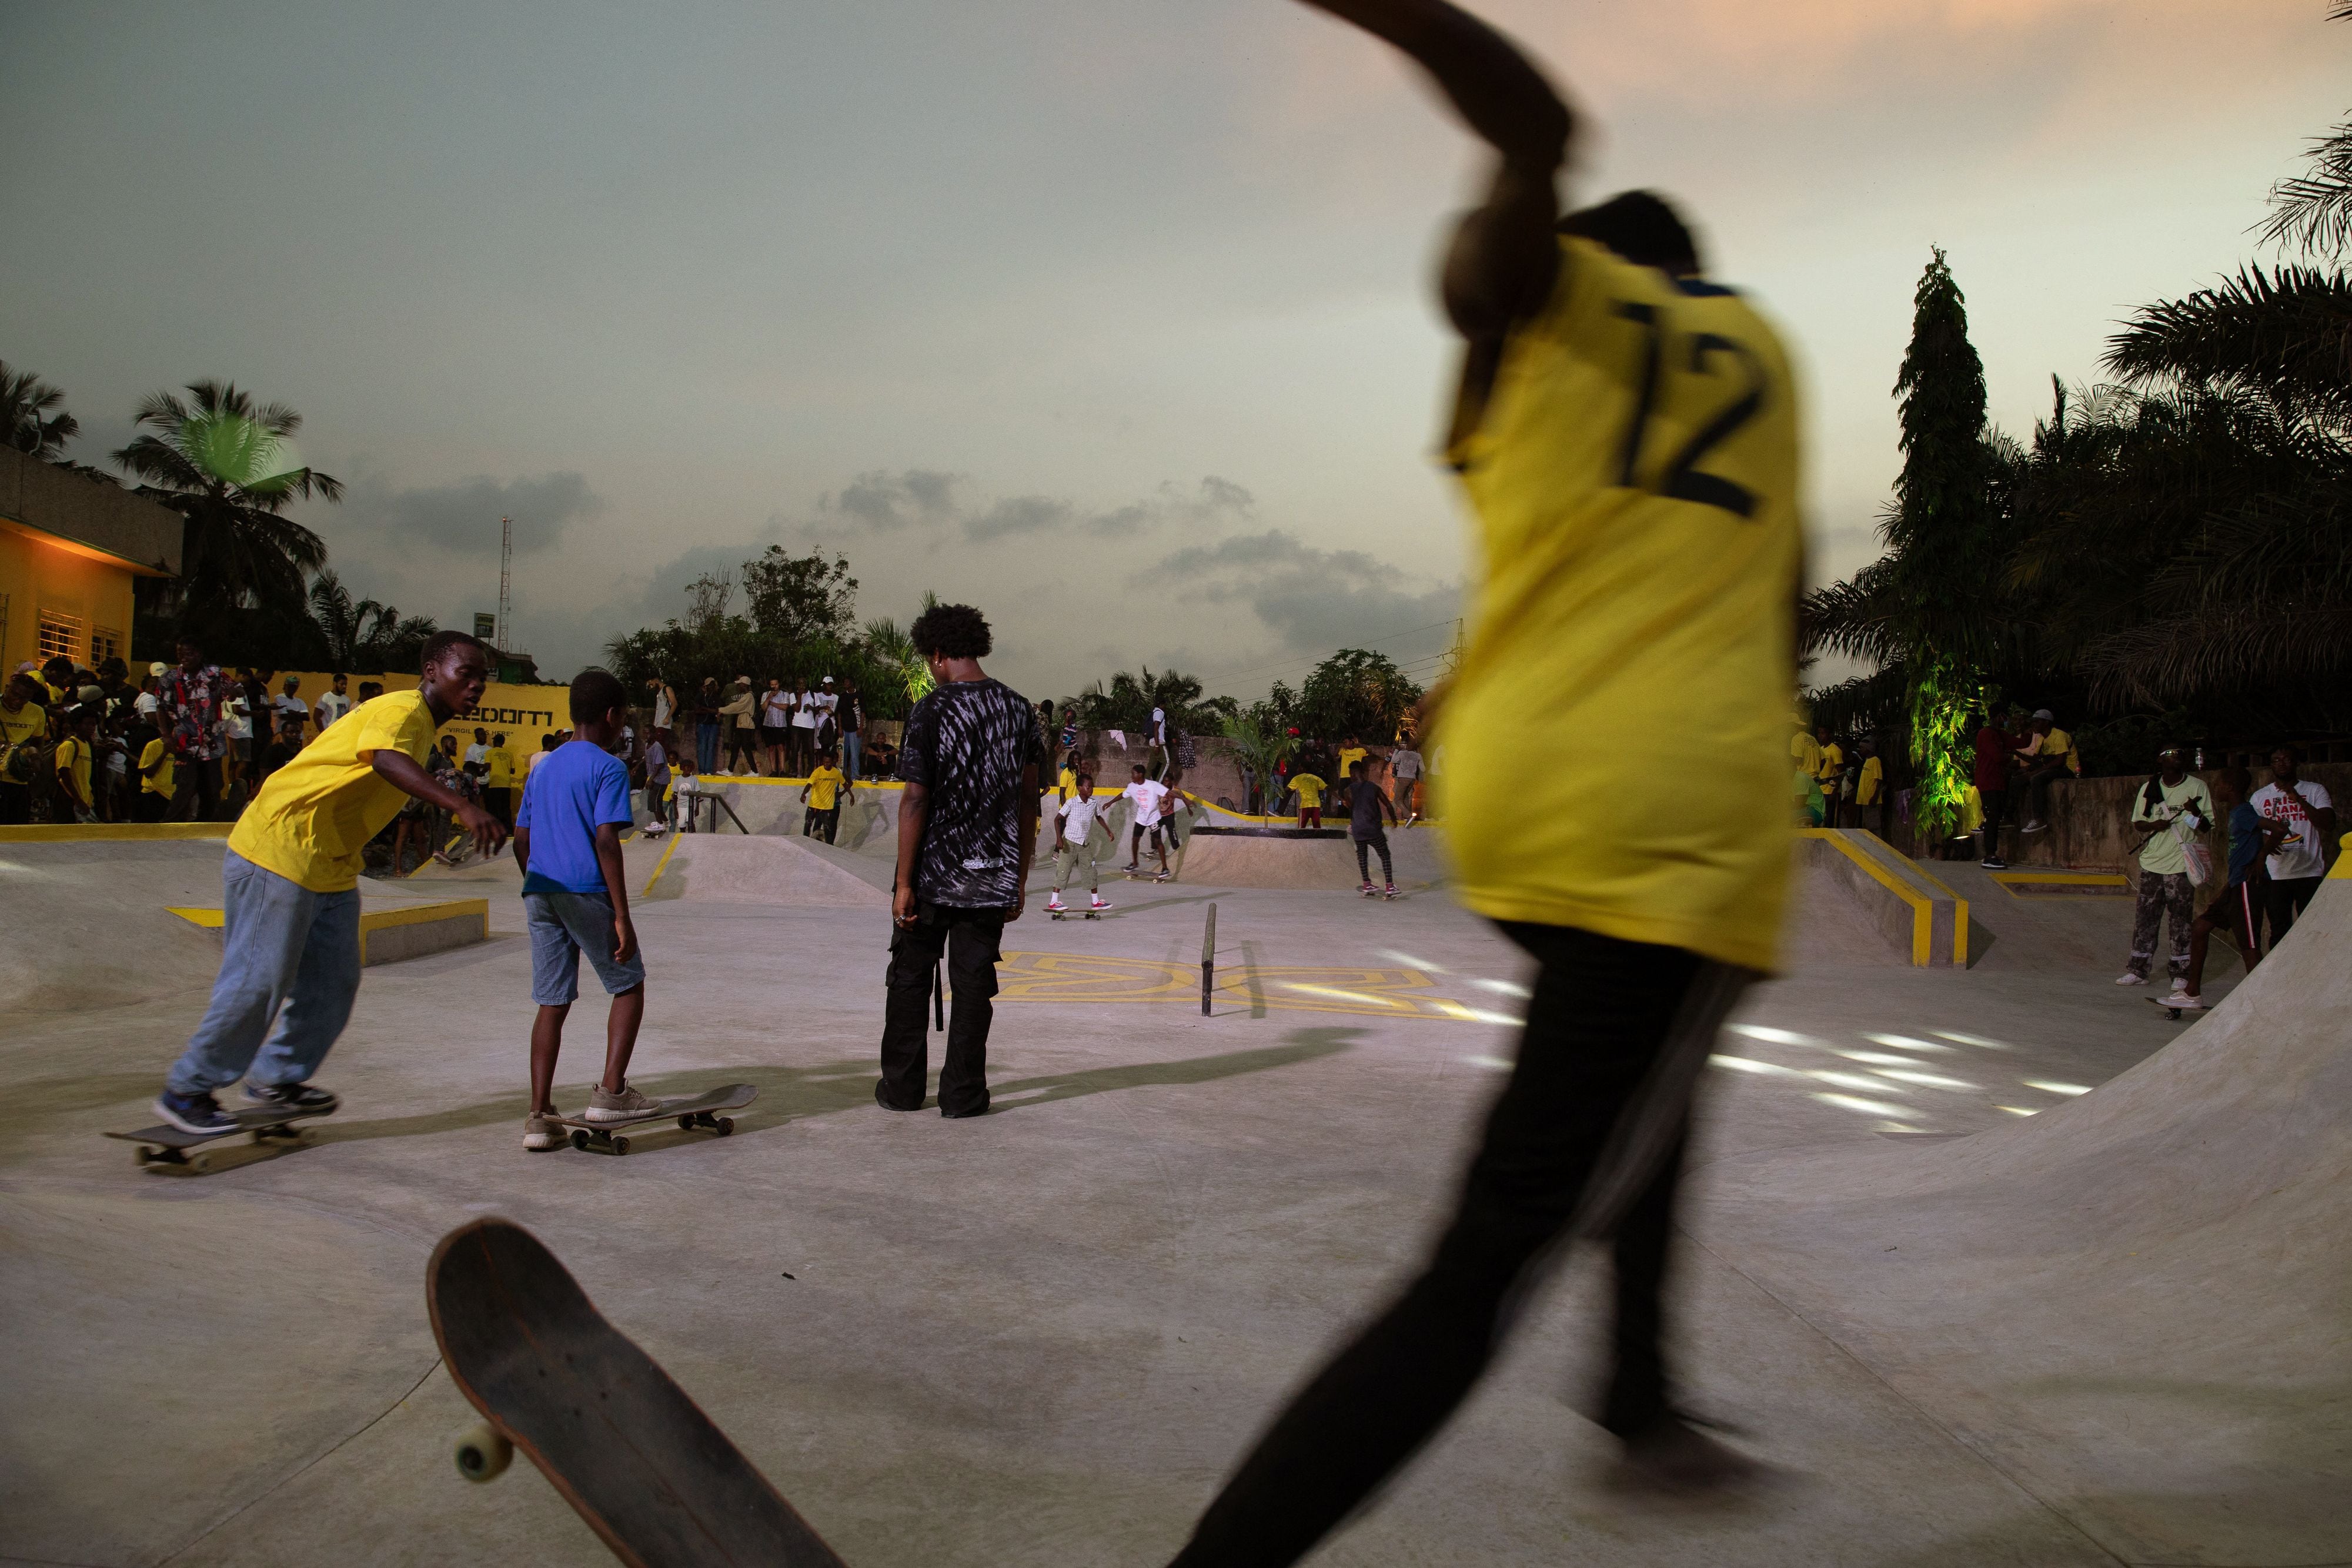 Virgil Abloh Lives On Through Ghana's First Skatepark